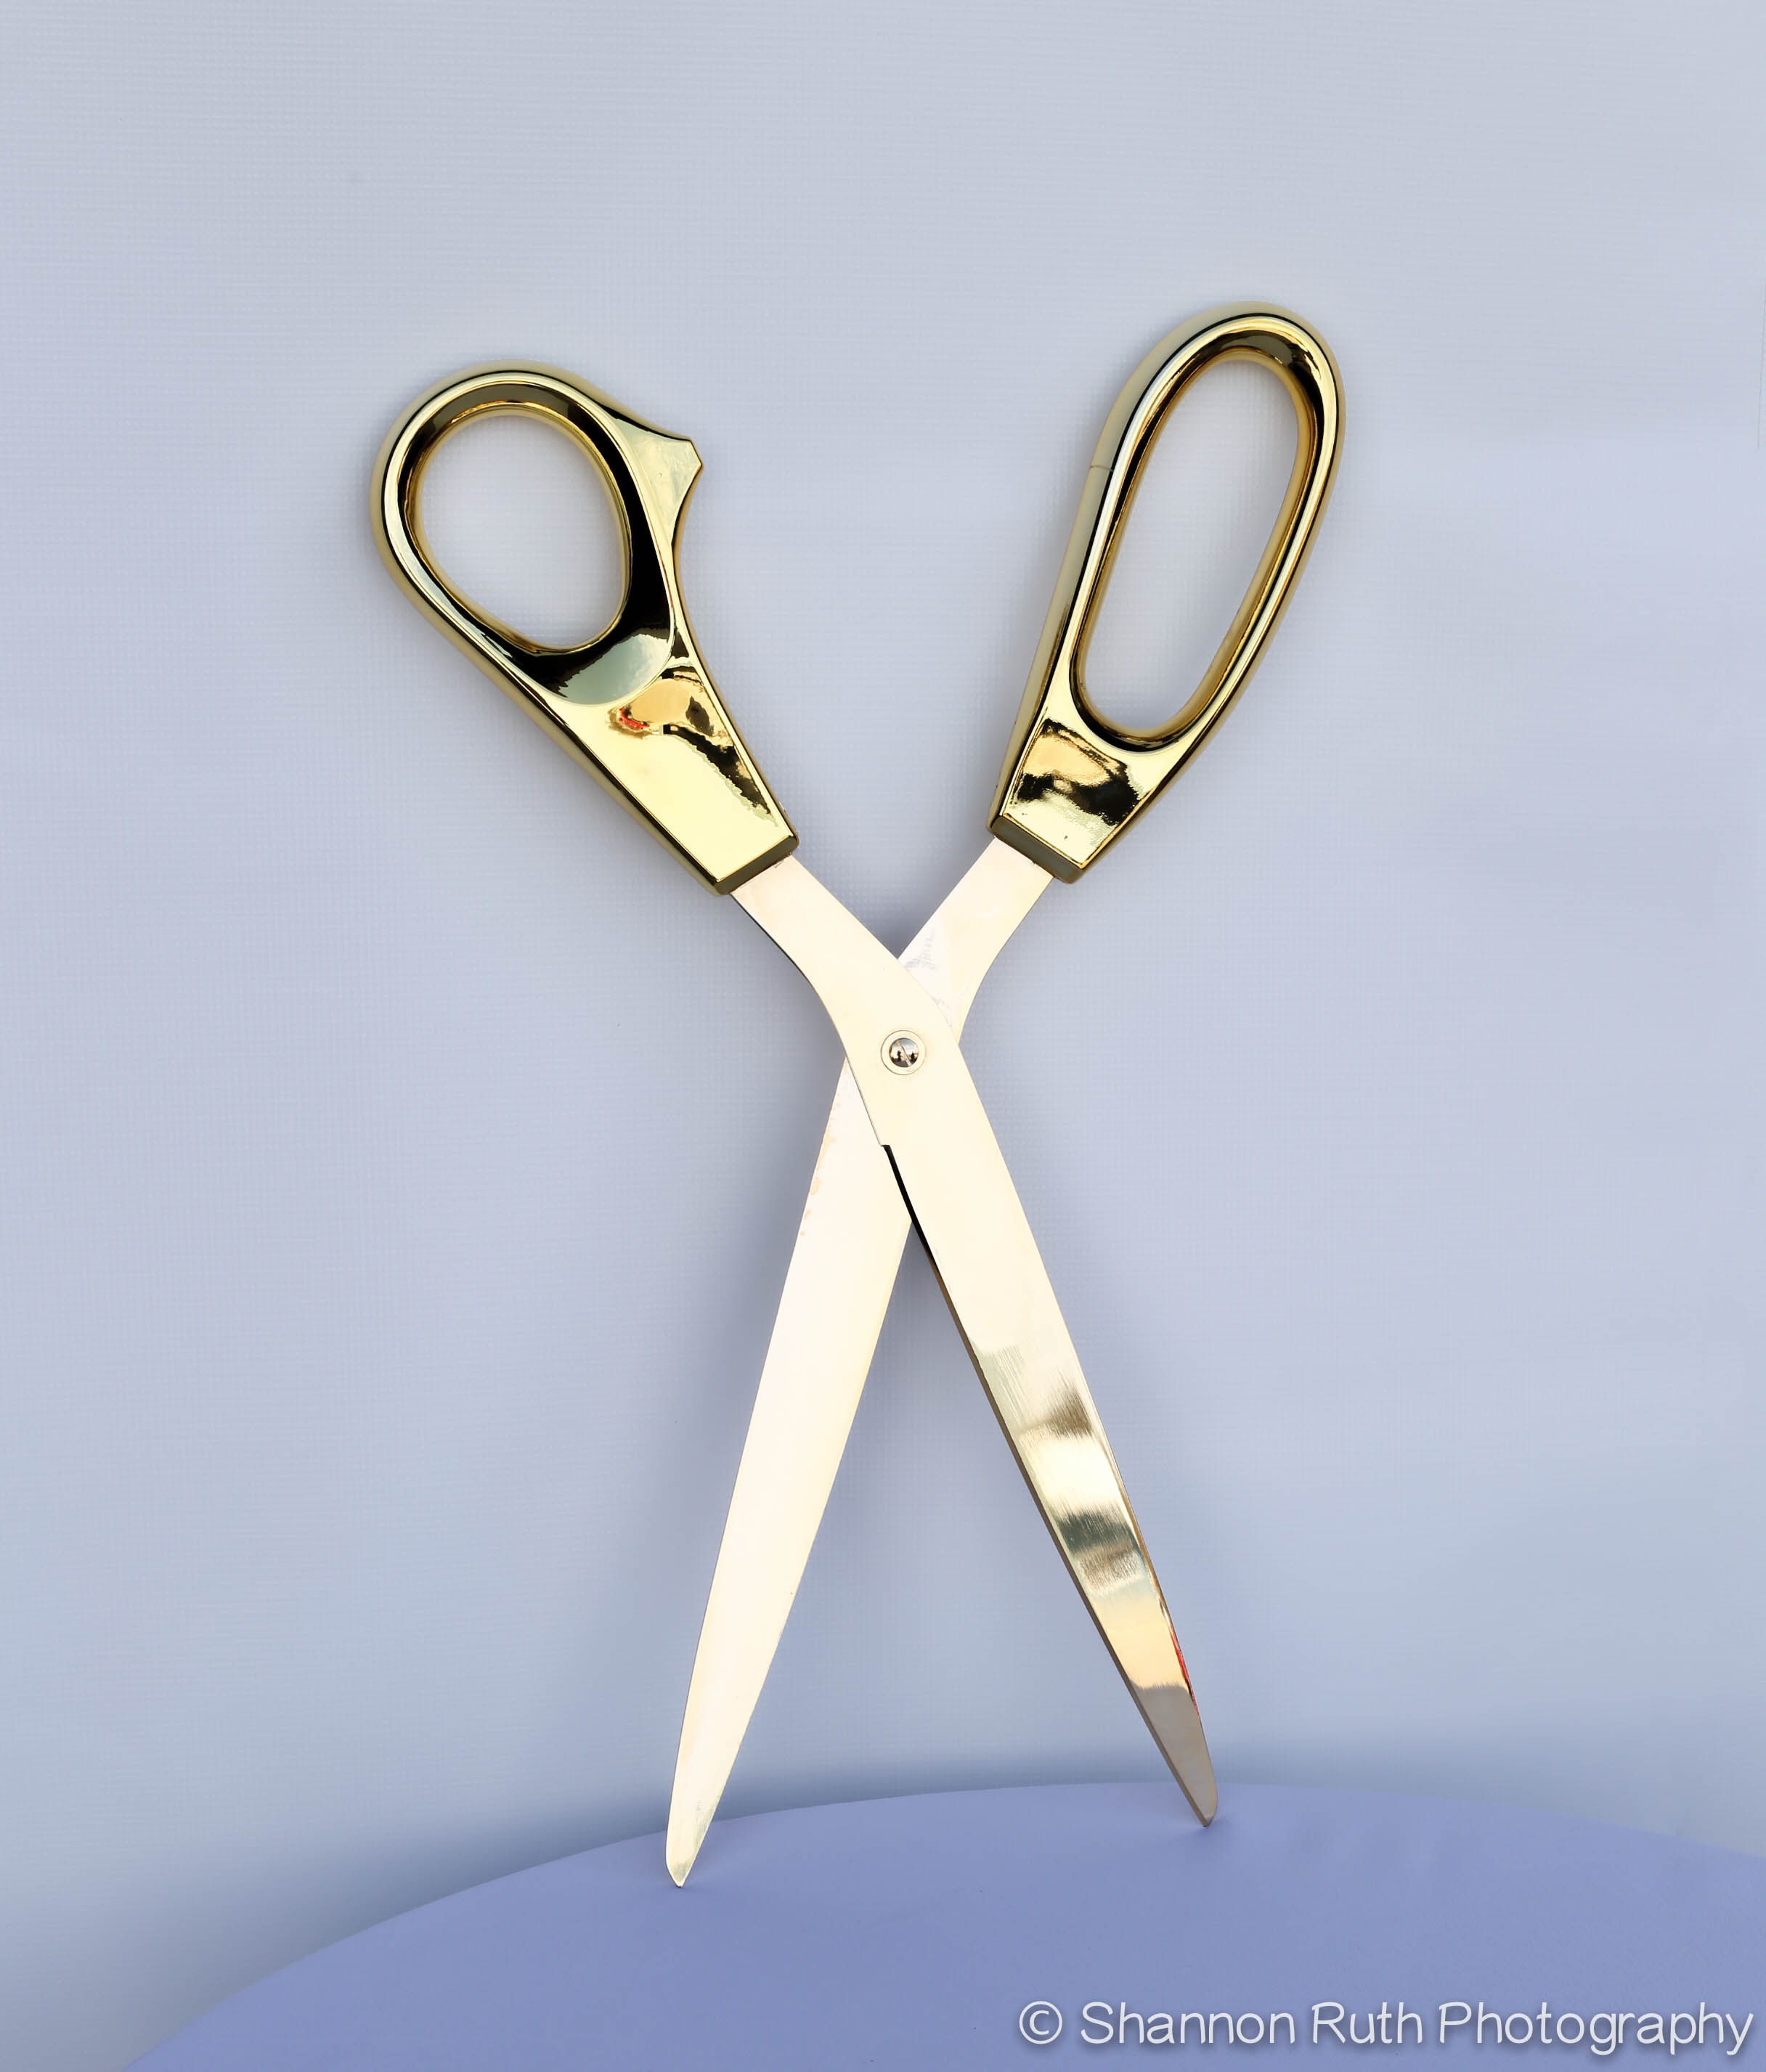 https://buckysrentals.com/wp-content/uploads/2014/10/Ribbon-cutting-scissors.jpg